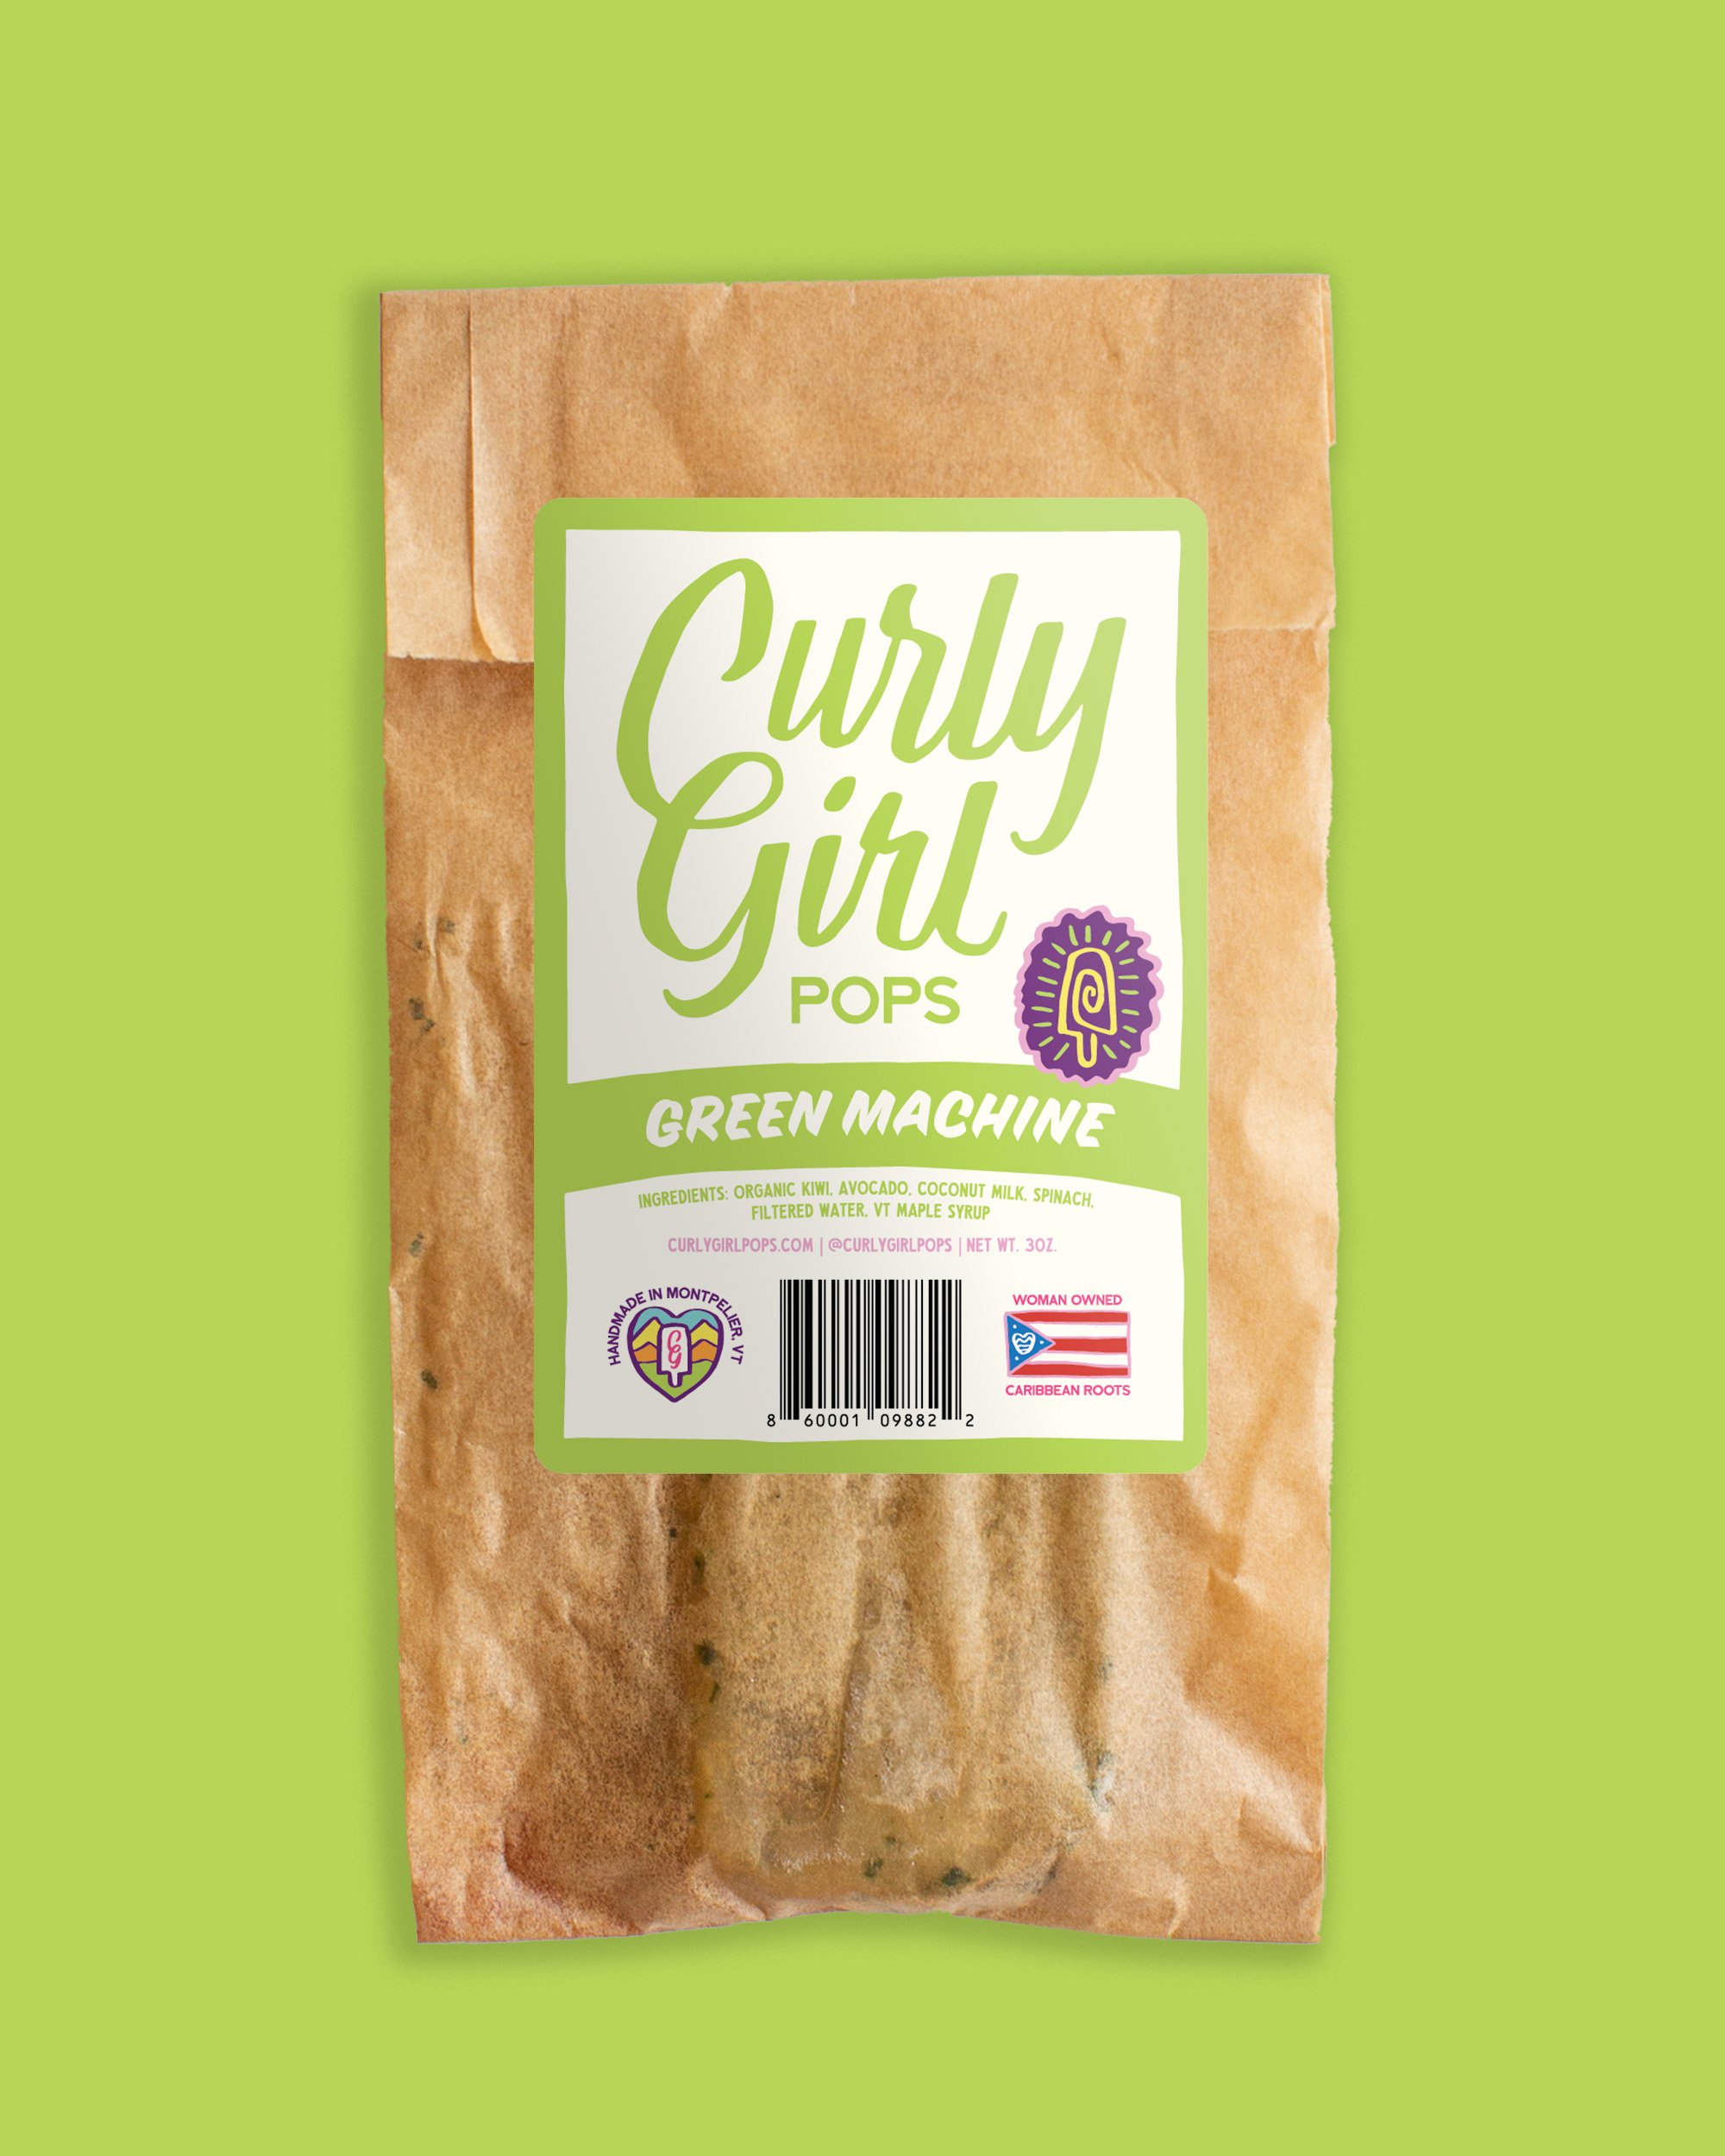 CurlyGirl-Packaging-Mockups-GreenMachine.jpg